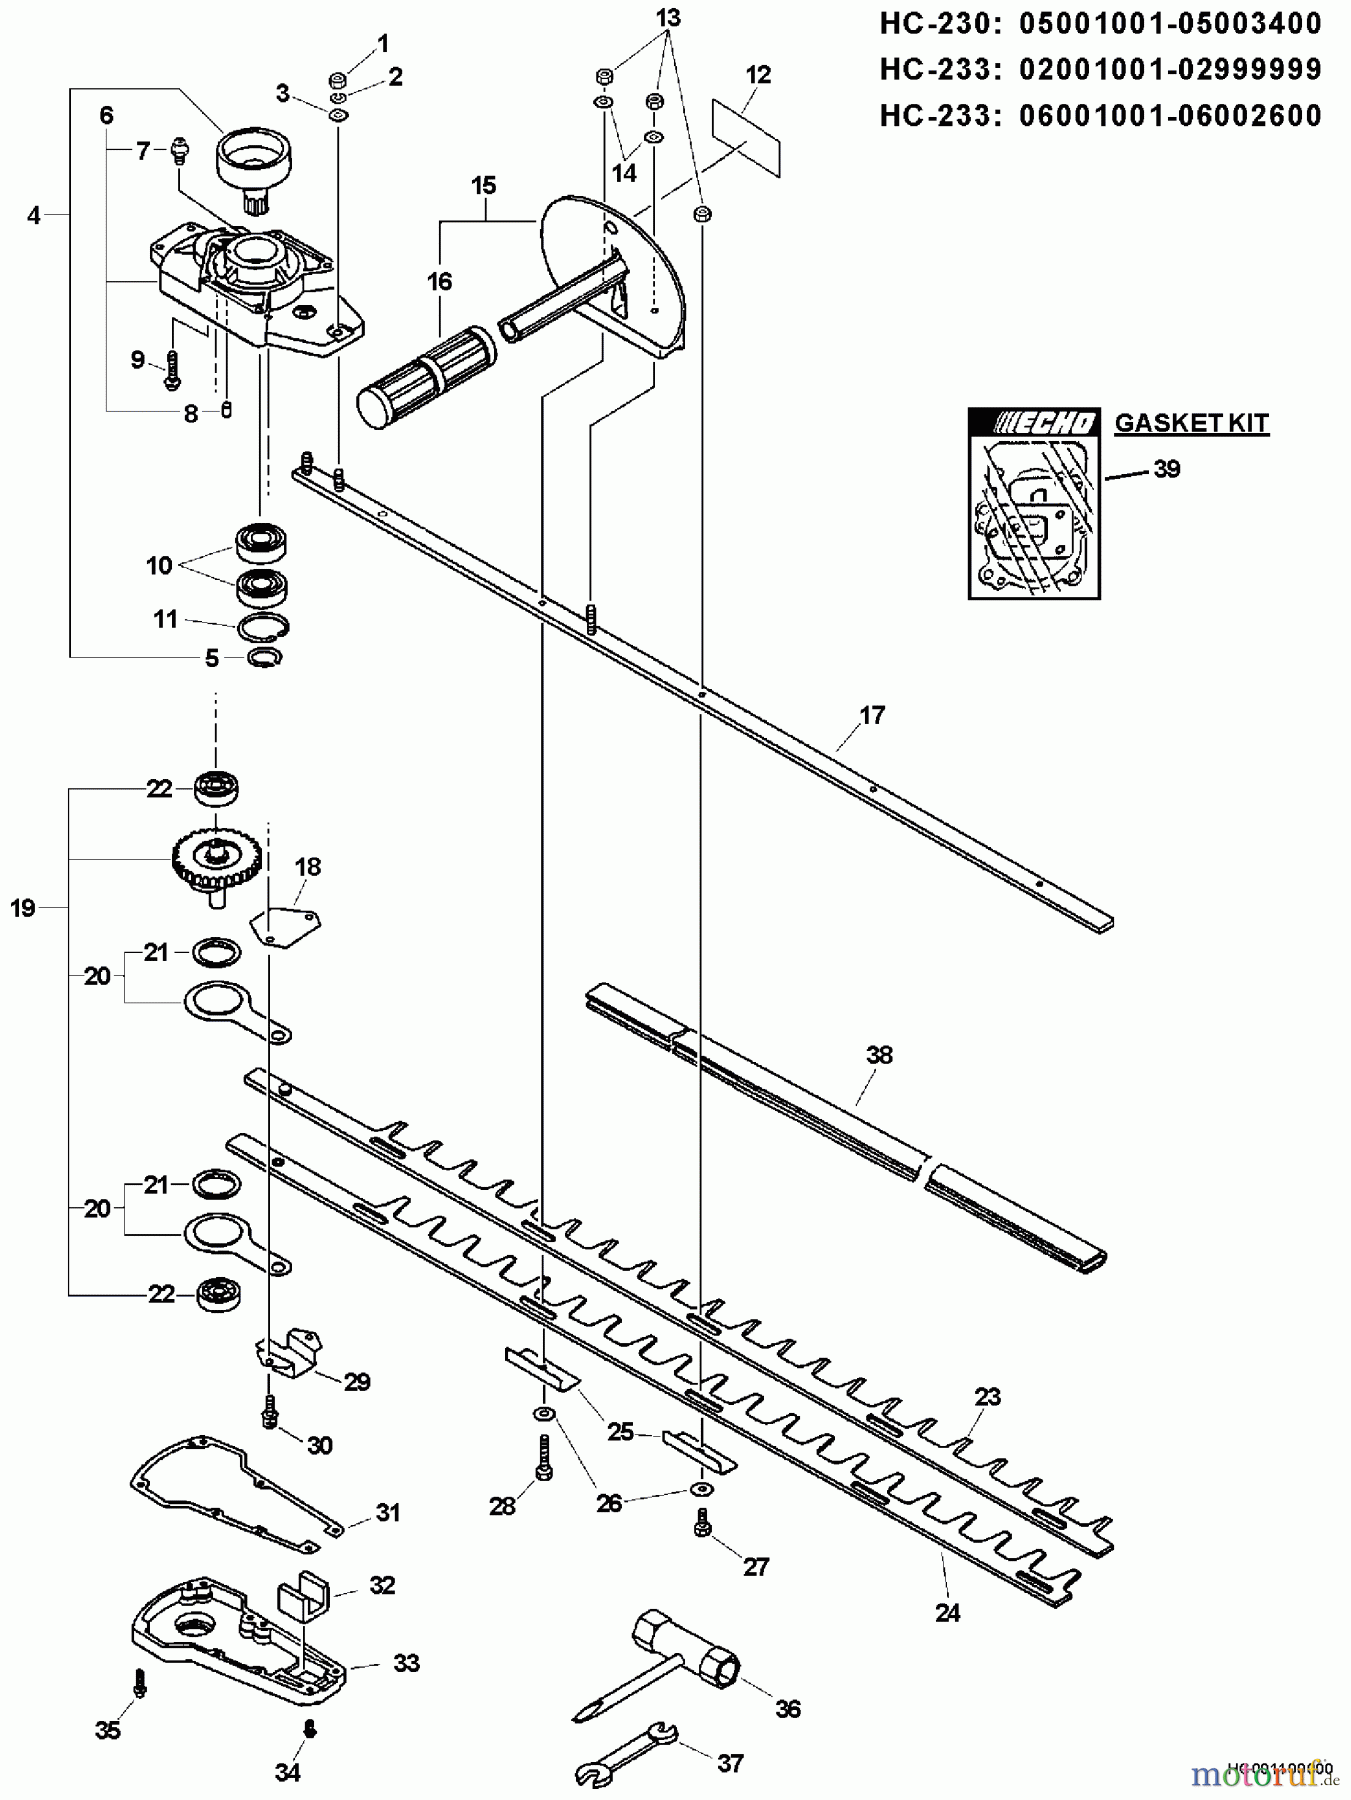  Echo Heckenscheren HC-233 - Echo Hedge Trimmer, S/N: 02001001 - 02999999 Blades, Gear Case, Side Handle, Tools